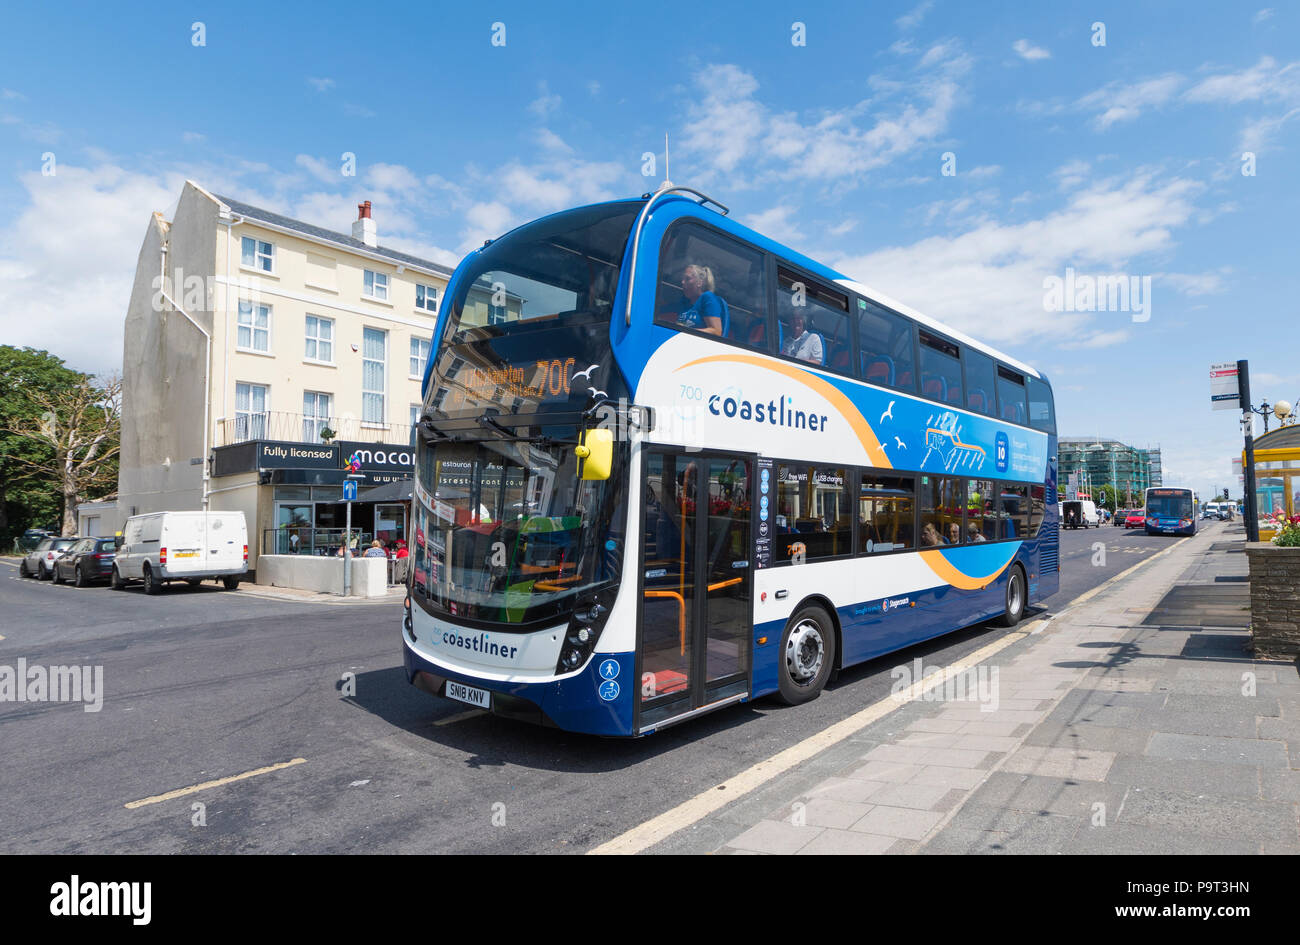 Nueva Stagecoach respetuosos con el medio ambiente número 700 bus Coastliner en Worthing, West Sussex, Inglaterra, Reino Unido. Foto de stock